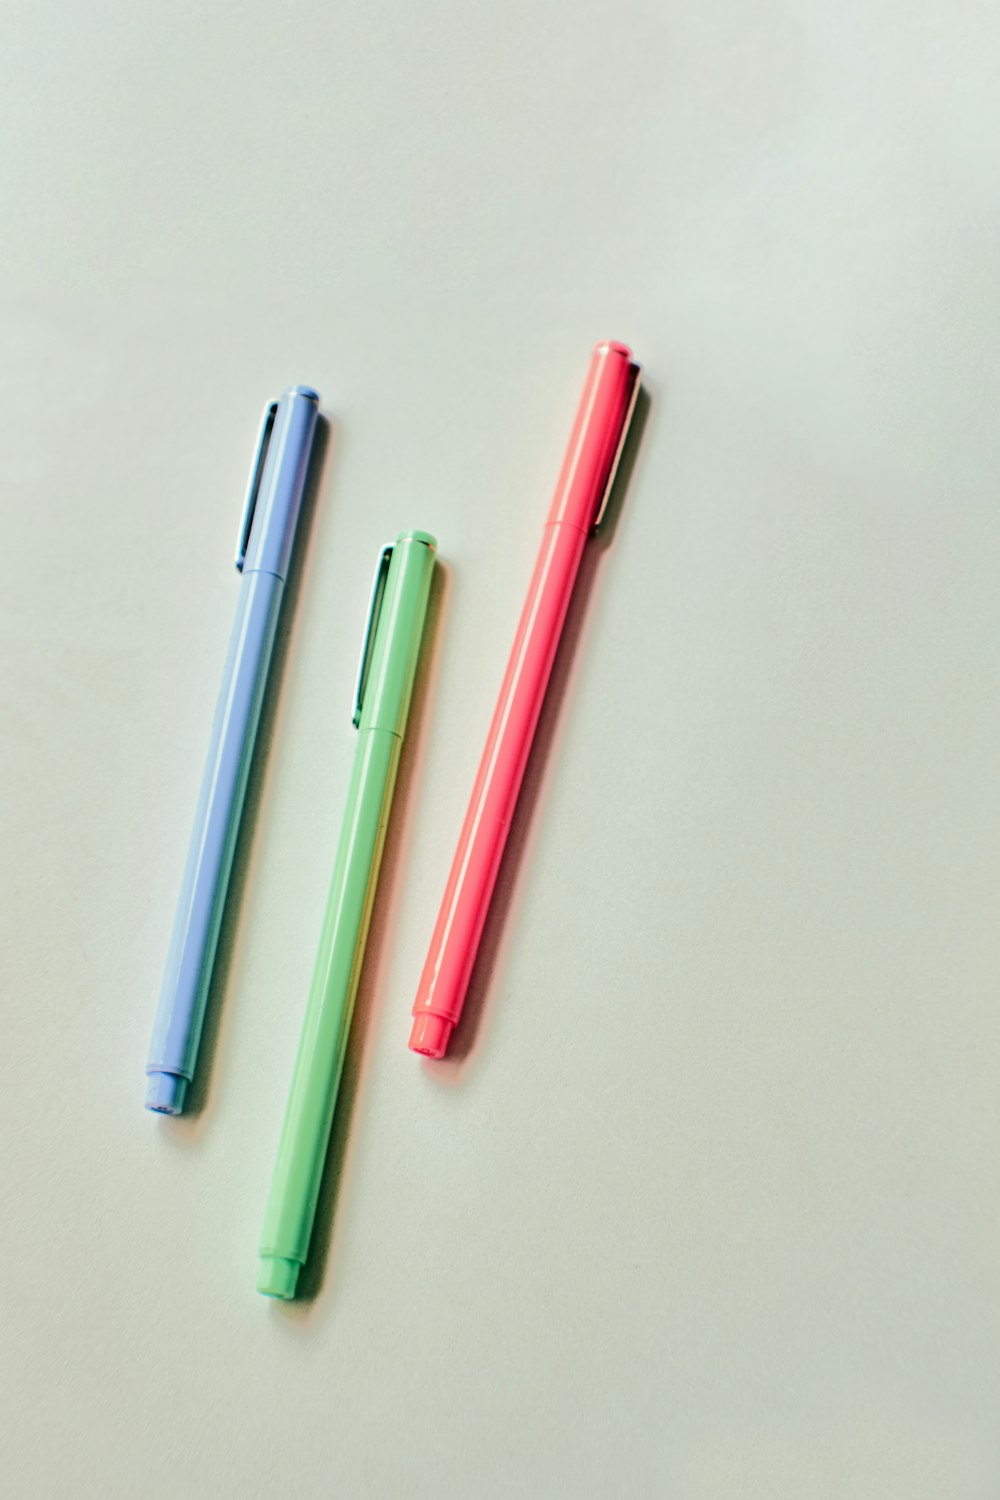 stylo rose et bleu sur table blanche